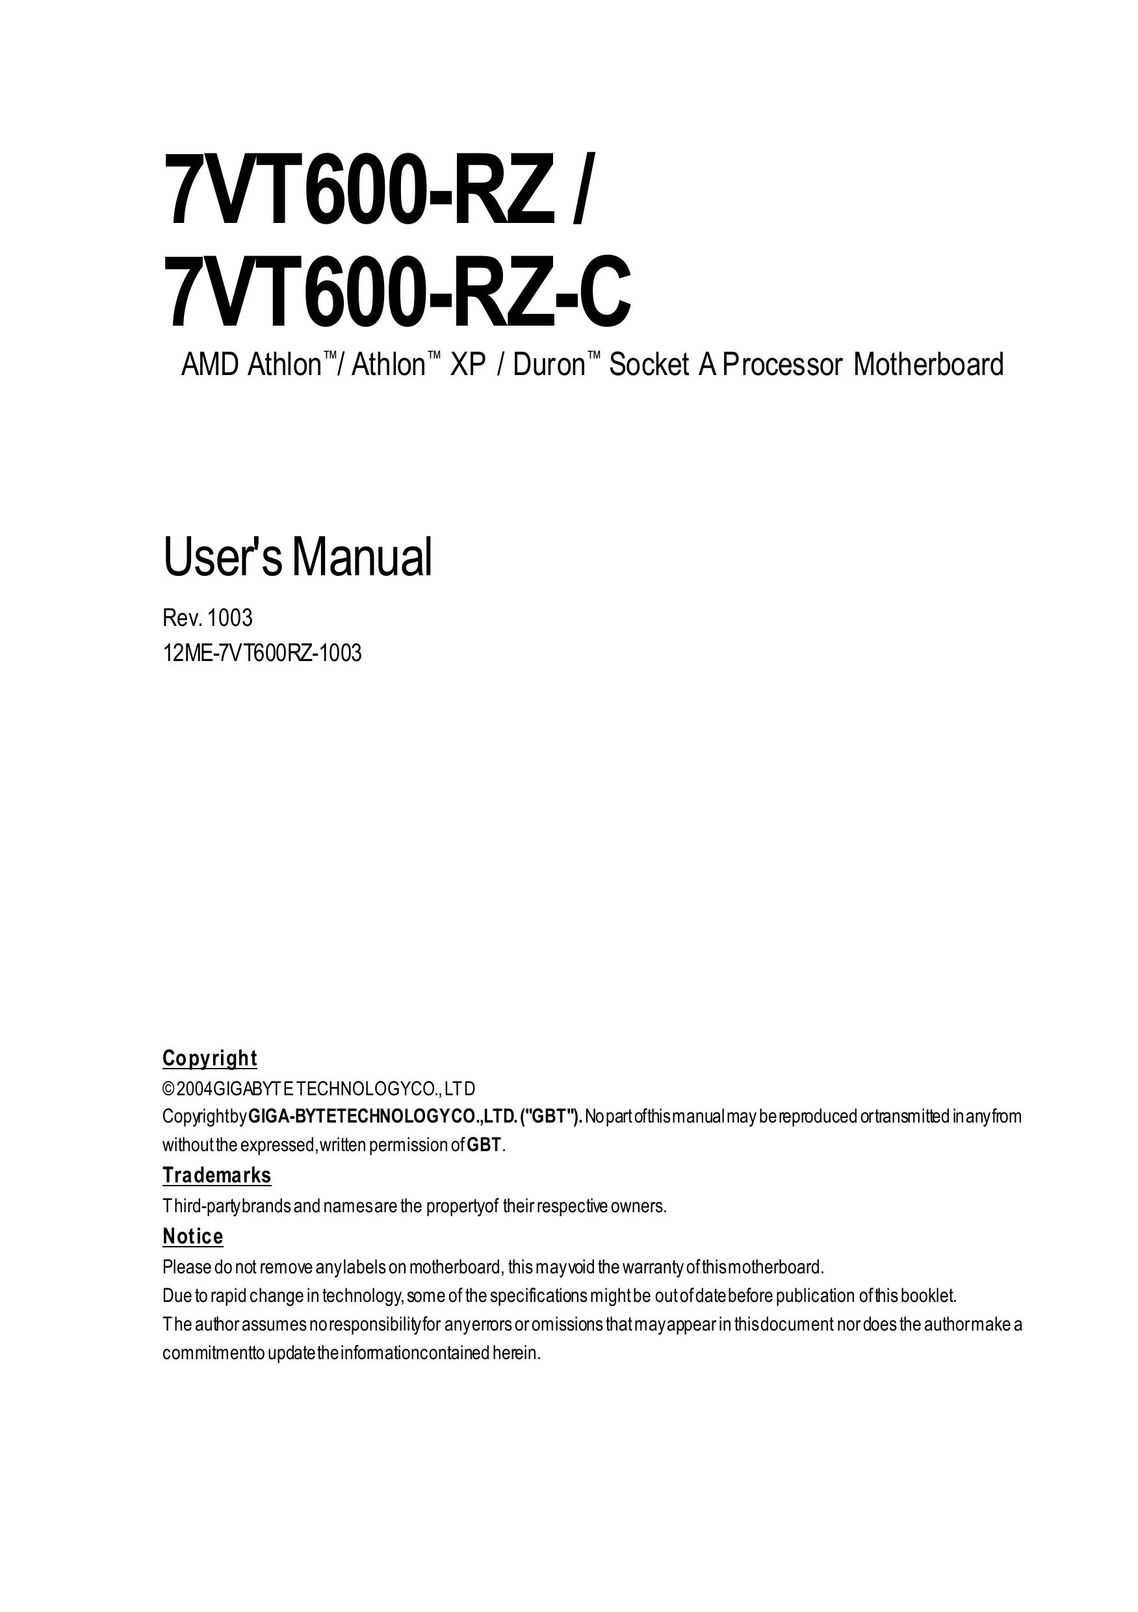 Gigabyte 7VT600-RZ Computer Hardware User Manual